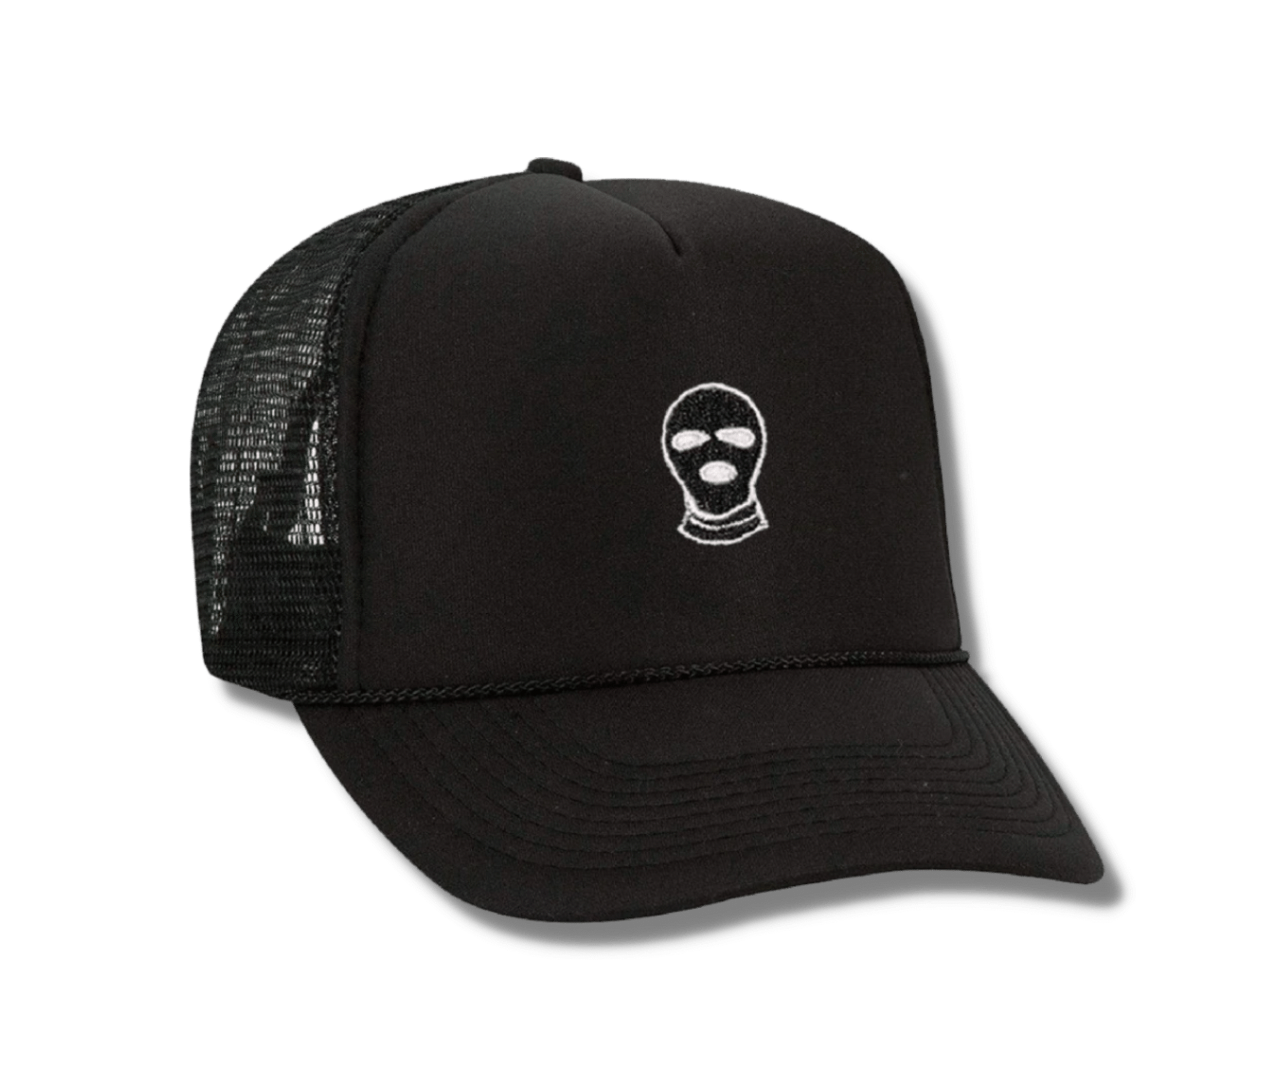 Ski Mask Trucker hat - DUMBFRESHCO